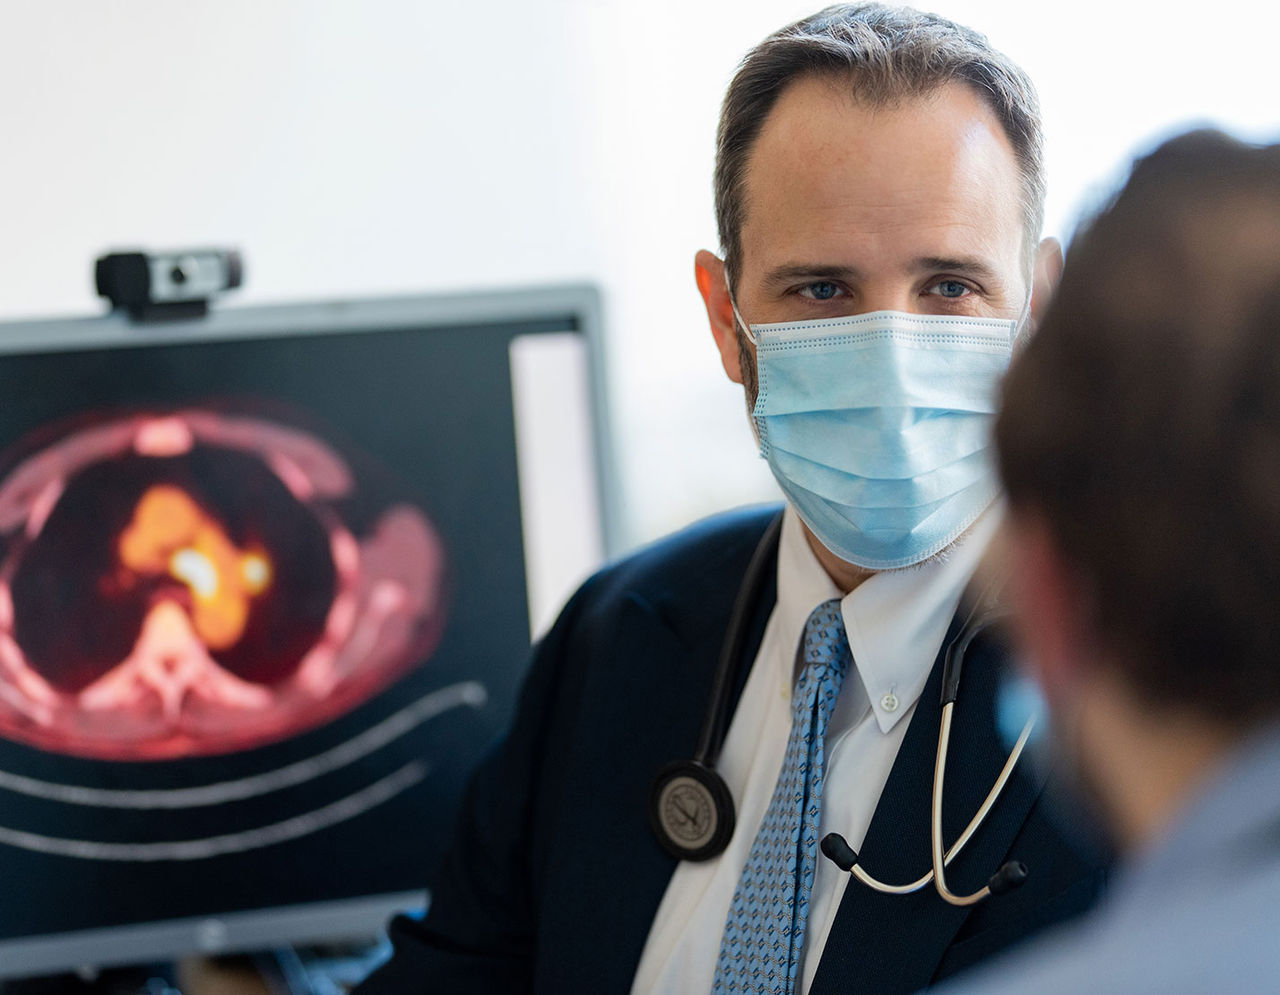 طبيب يرتدي كمامة يتحدث مع مريض، وتظهر صورة أشعة على شاشة الكمبيوتر